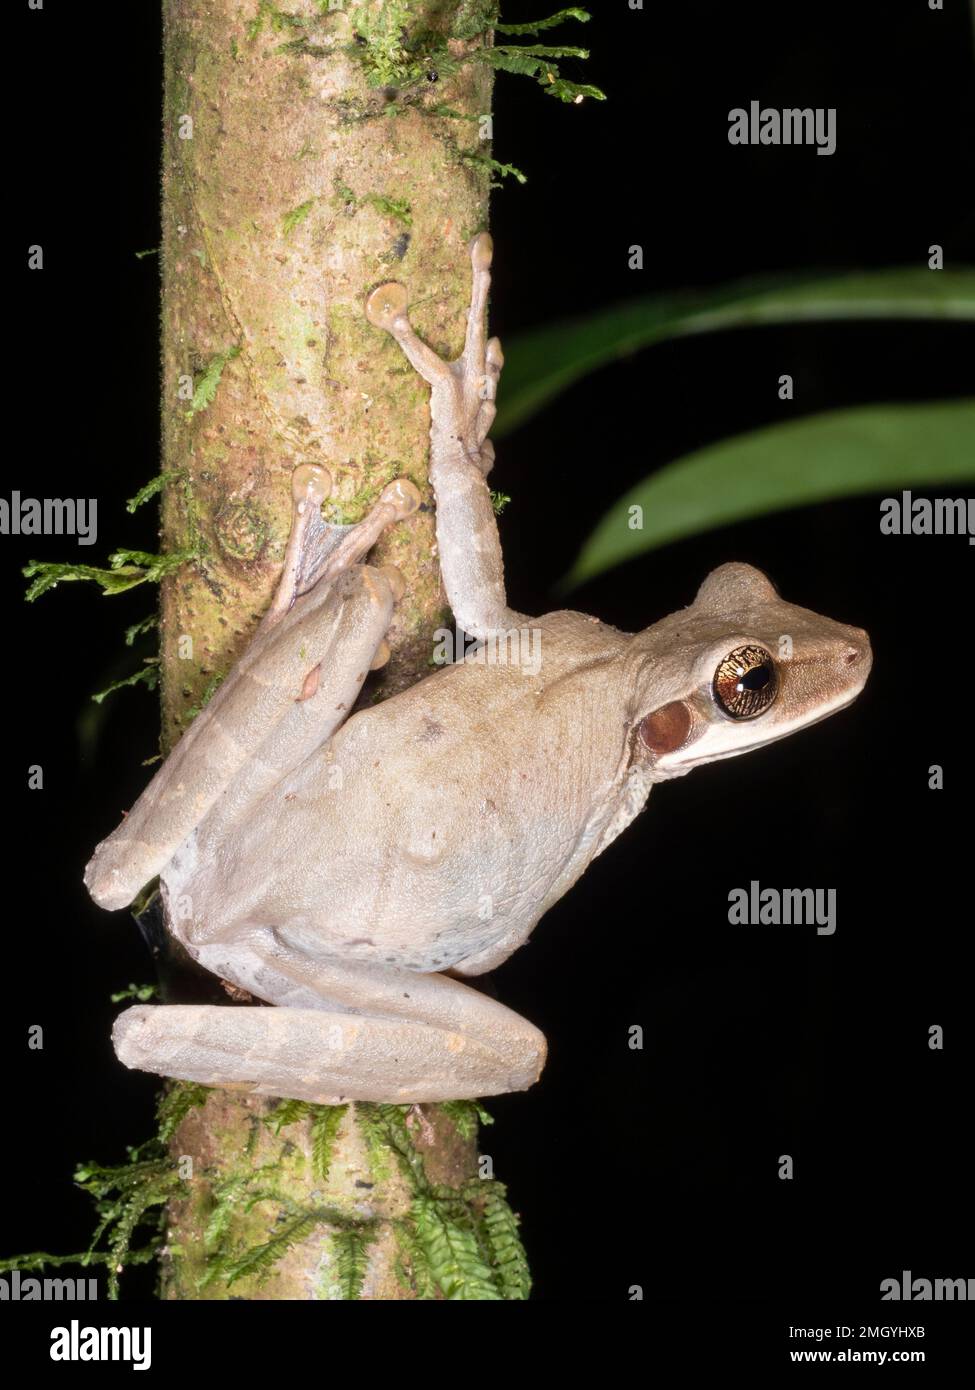 Rana arbórea plana de cabeza ancha (Osteocephalus planiceps) en una rama de la selva tropical en la Amazonía ecuatoriana Foto de stock